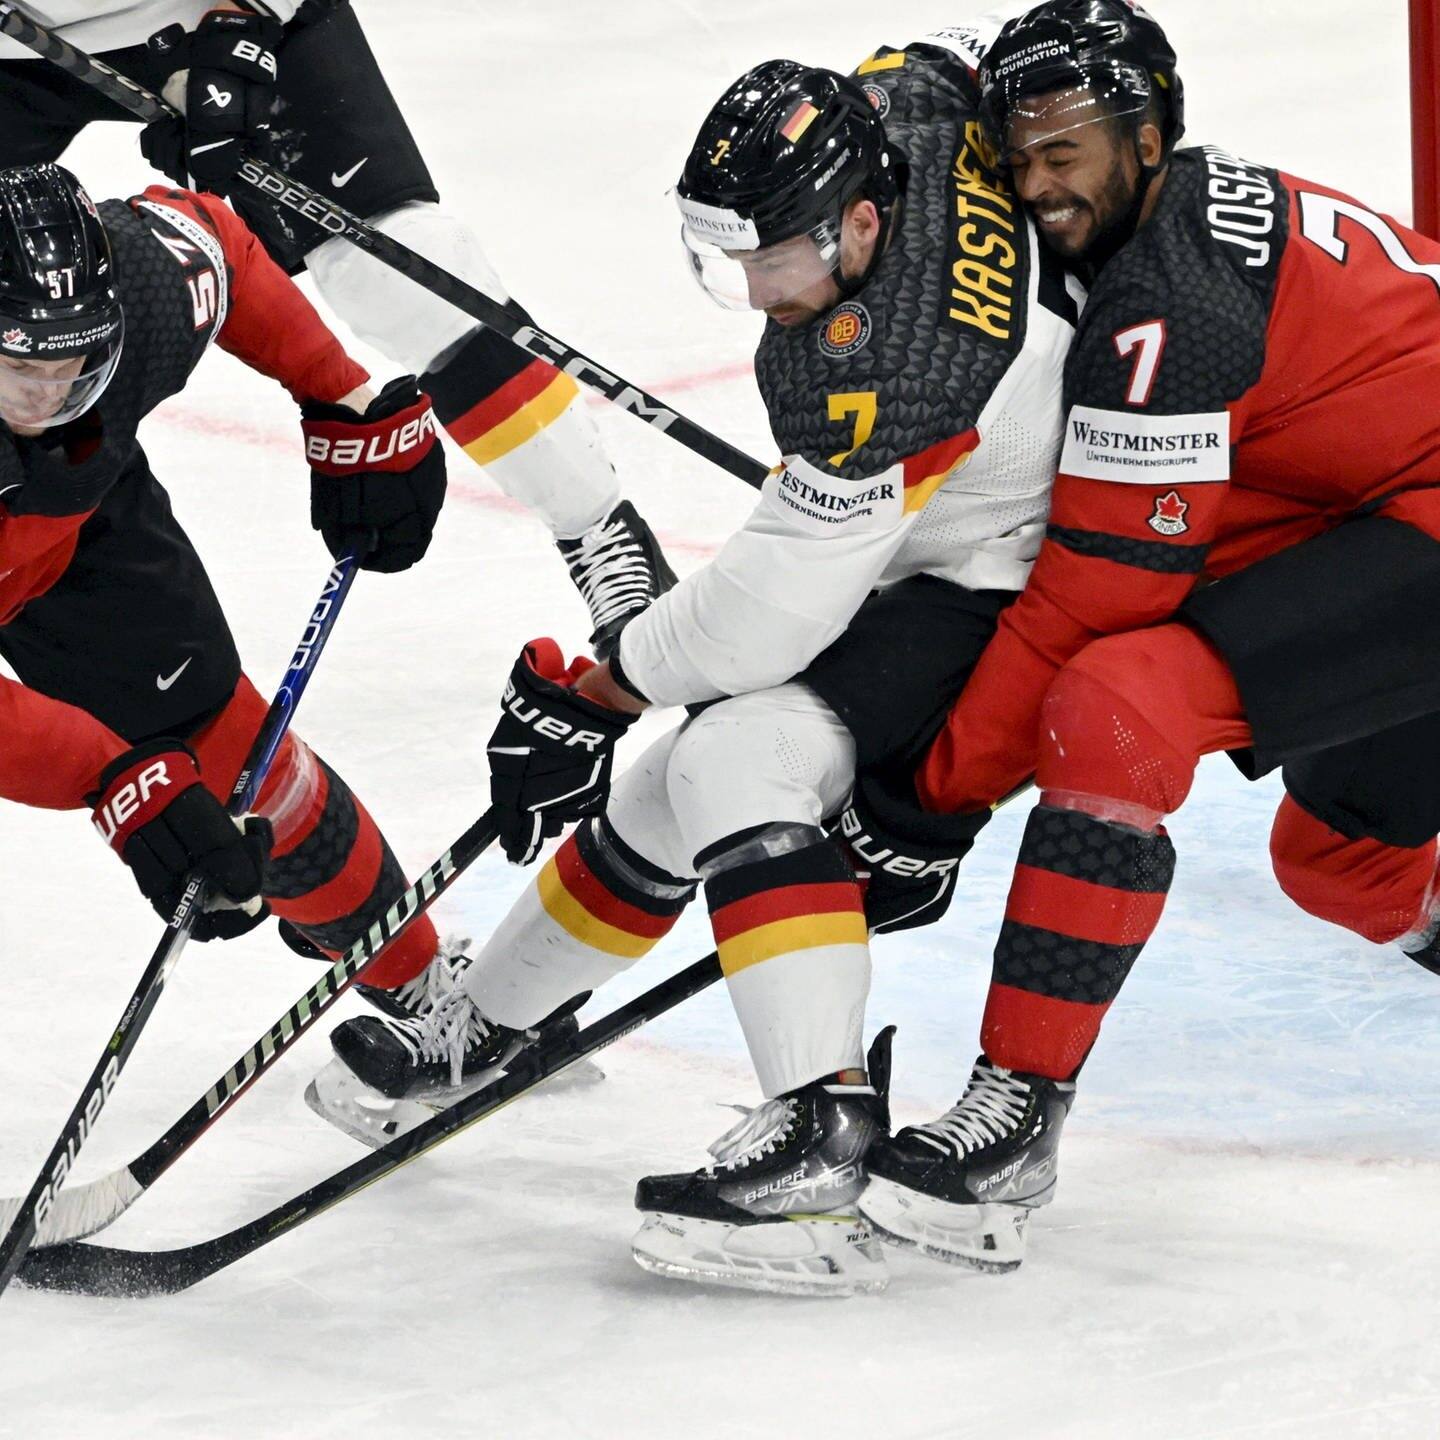 Eishockey-WM Deutschland verliert, Kanada ist Weltmeister